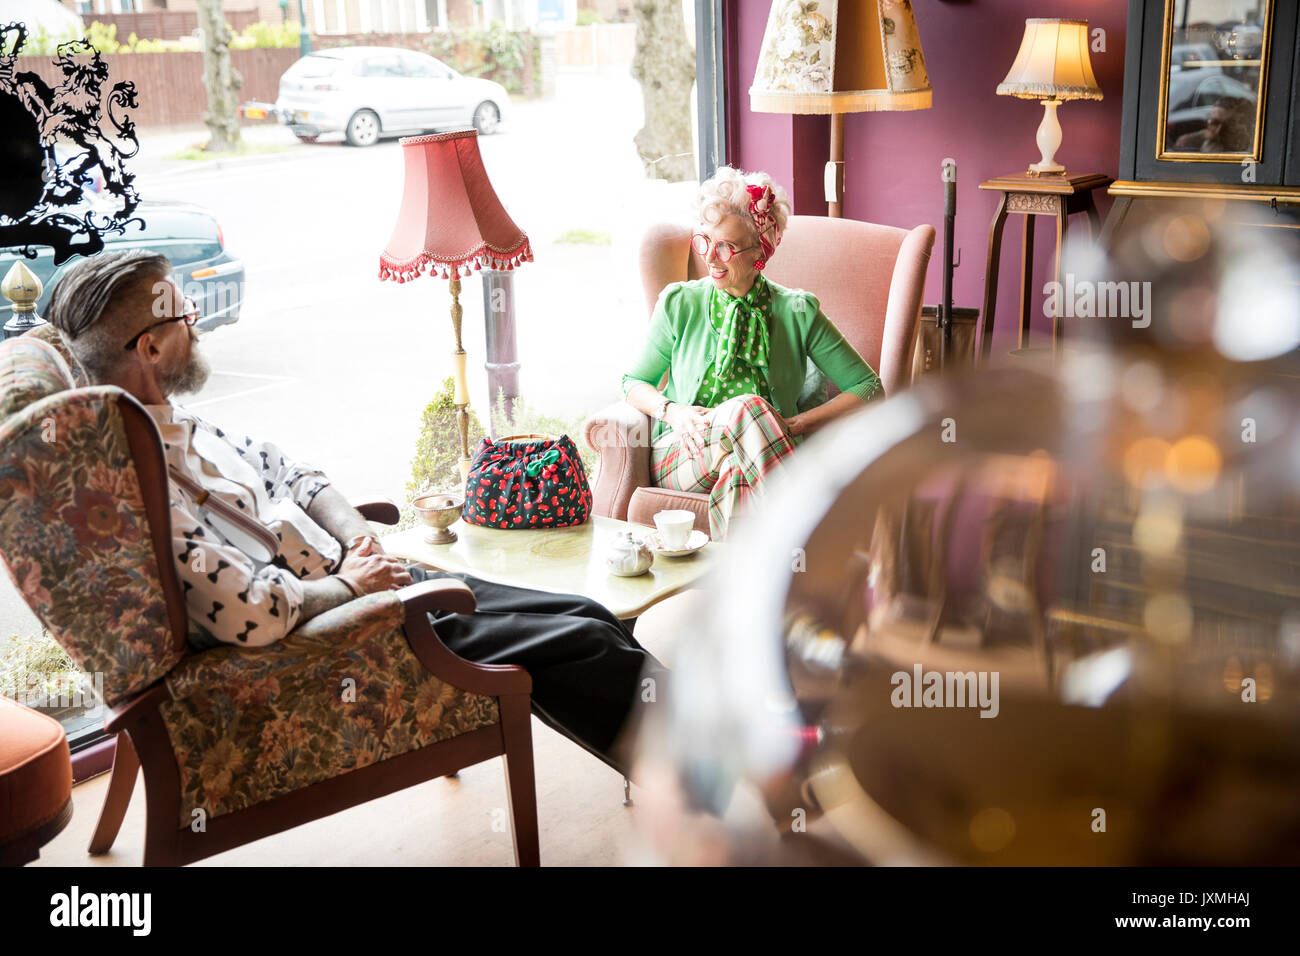 Heureux couple vintage original prenant le thé dans les salons de thé Banque D'Images